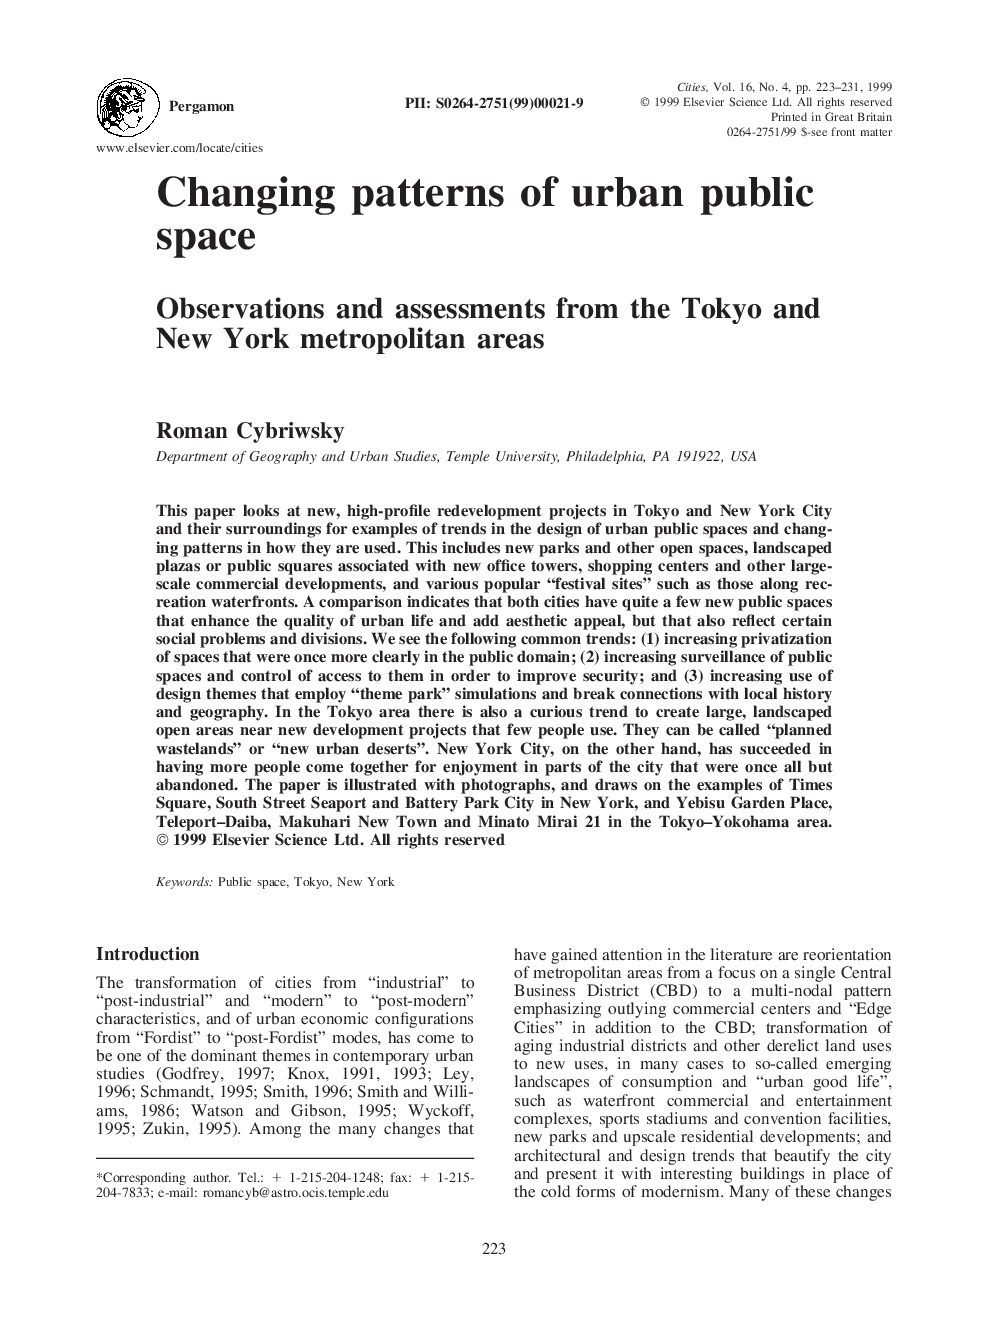 الگوهای در حال تغییر در فضاهای عمومی شهری: مشاهدات و ارزیابی های کلان شهرهای  توکیو و نیویورک